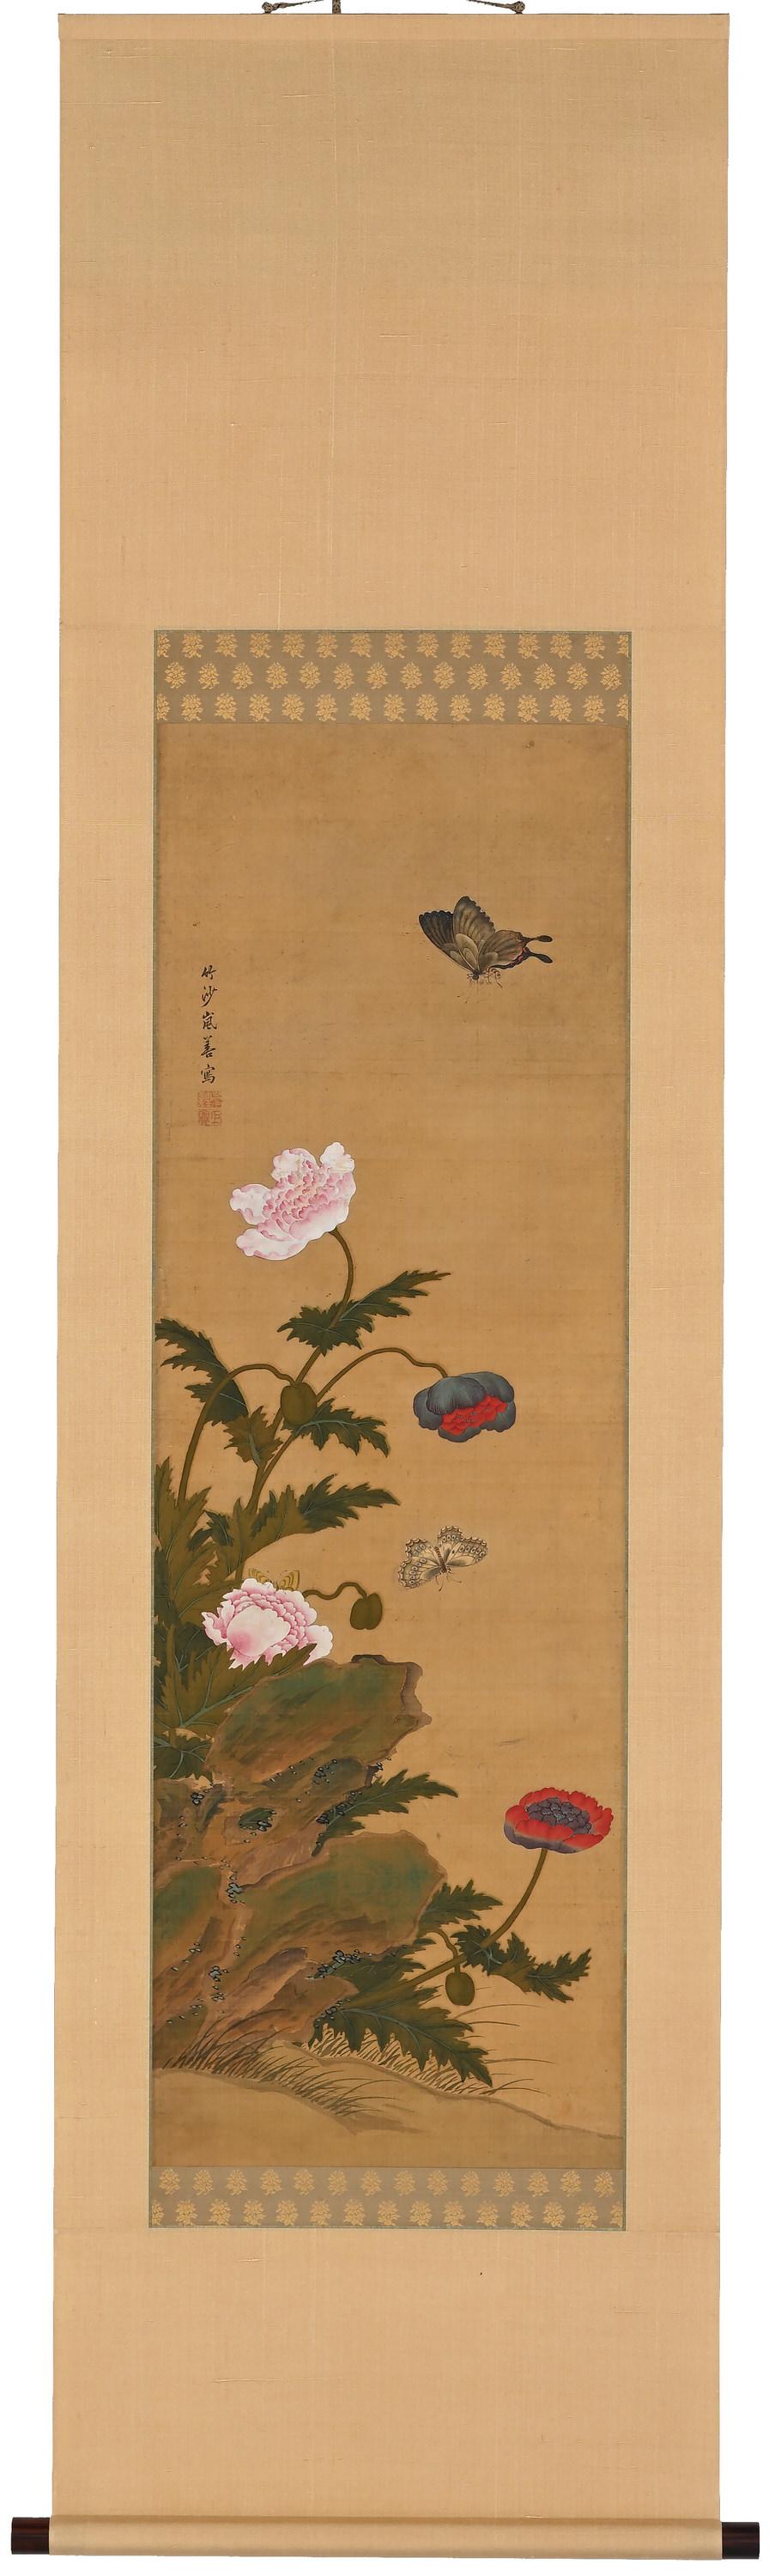 Coquelicots et papillons

Encre, pigment et gofun sur soie

Igarashi Chikusa (1774-1844)

Signature : Chikusa Ran Zen

Sceau supérieur : Ran Shuzen
Sceau inférieur : Kyoho

Dimensions :

Parchemin : H. 68